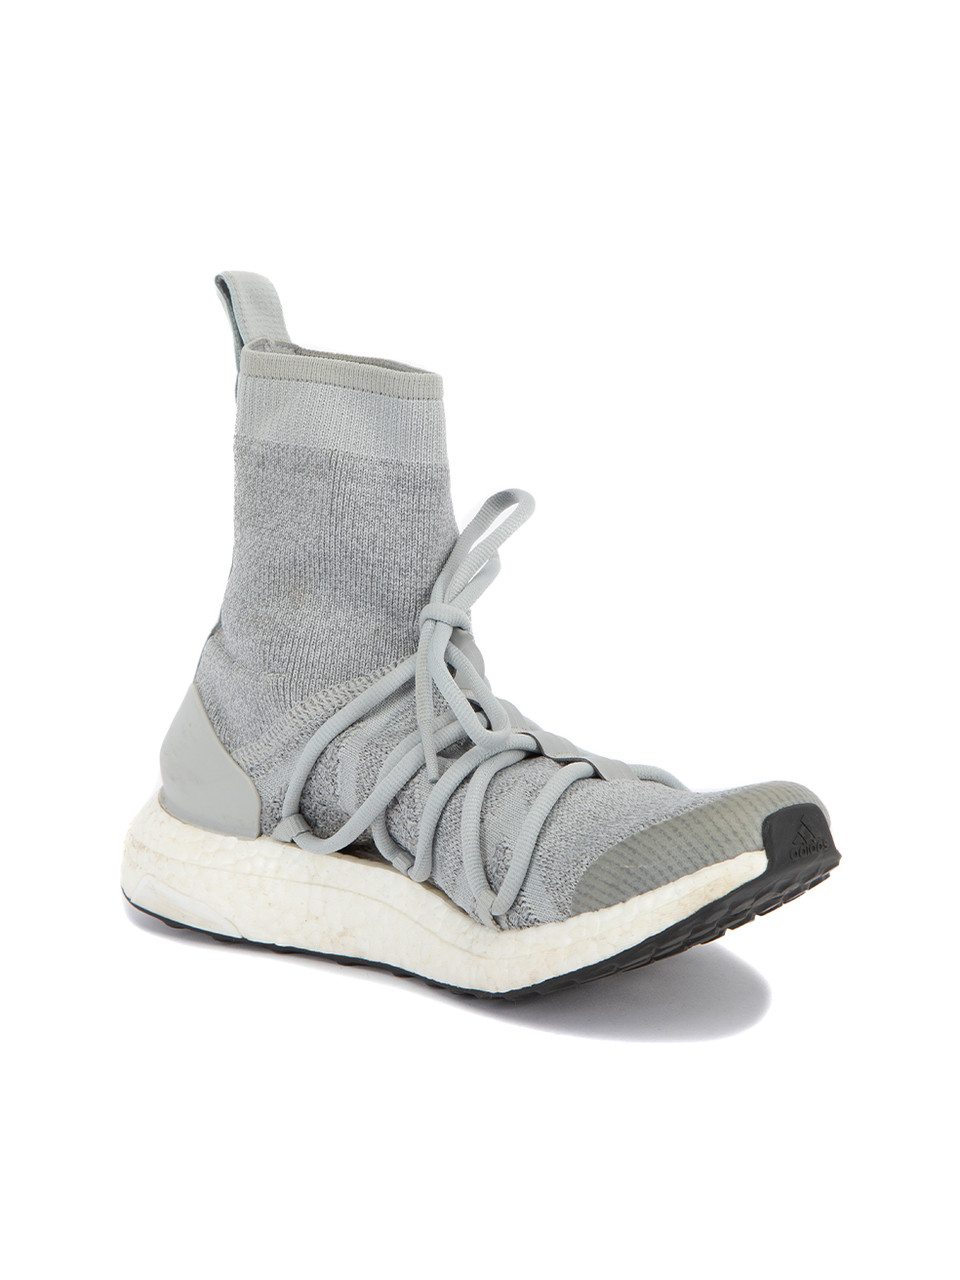 Adidas By Stella McCartney Grey Cloth UltraBOOST X Mid Trainers